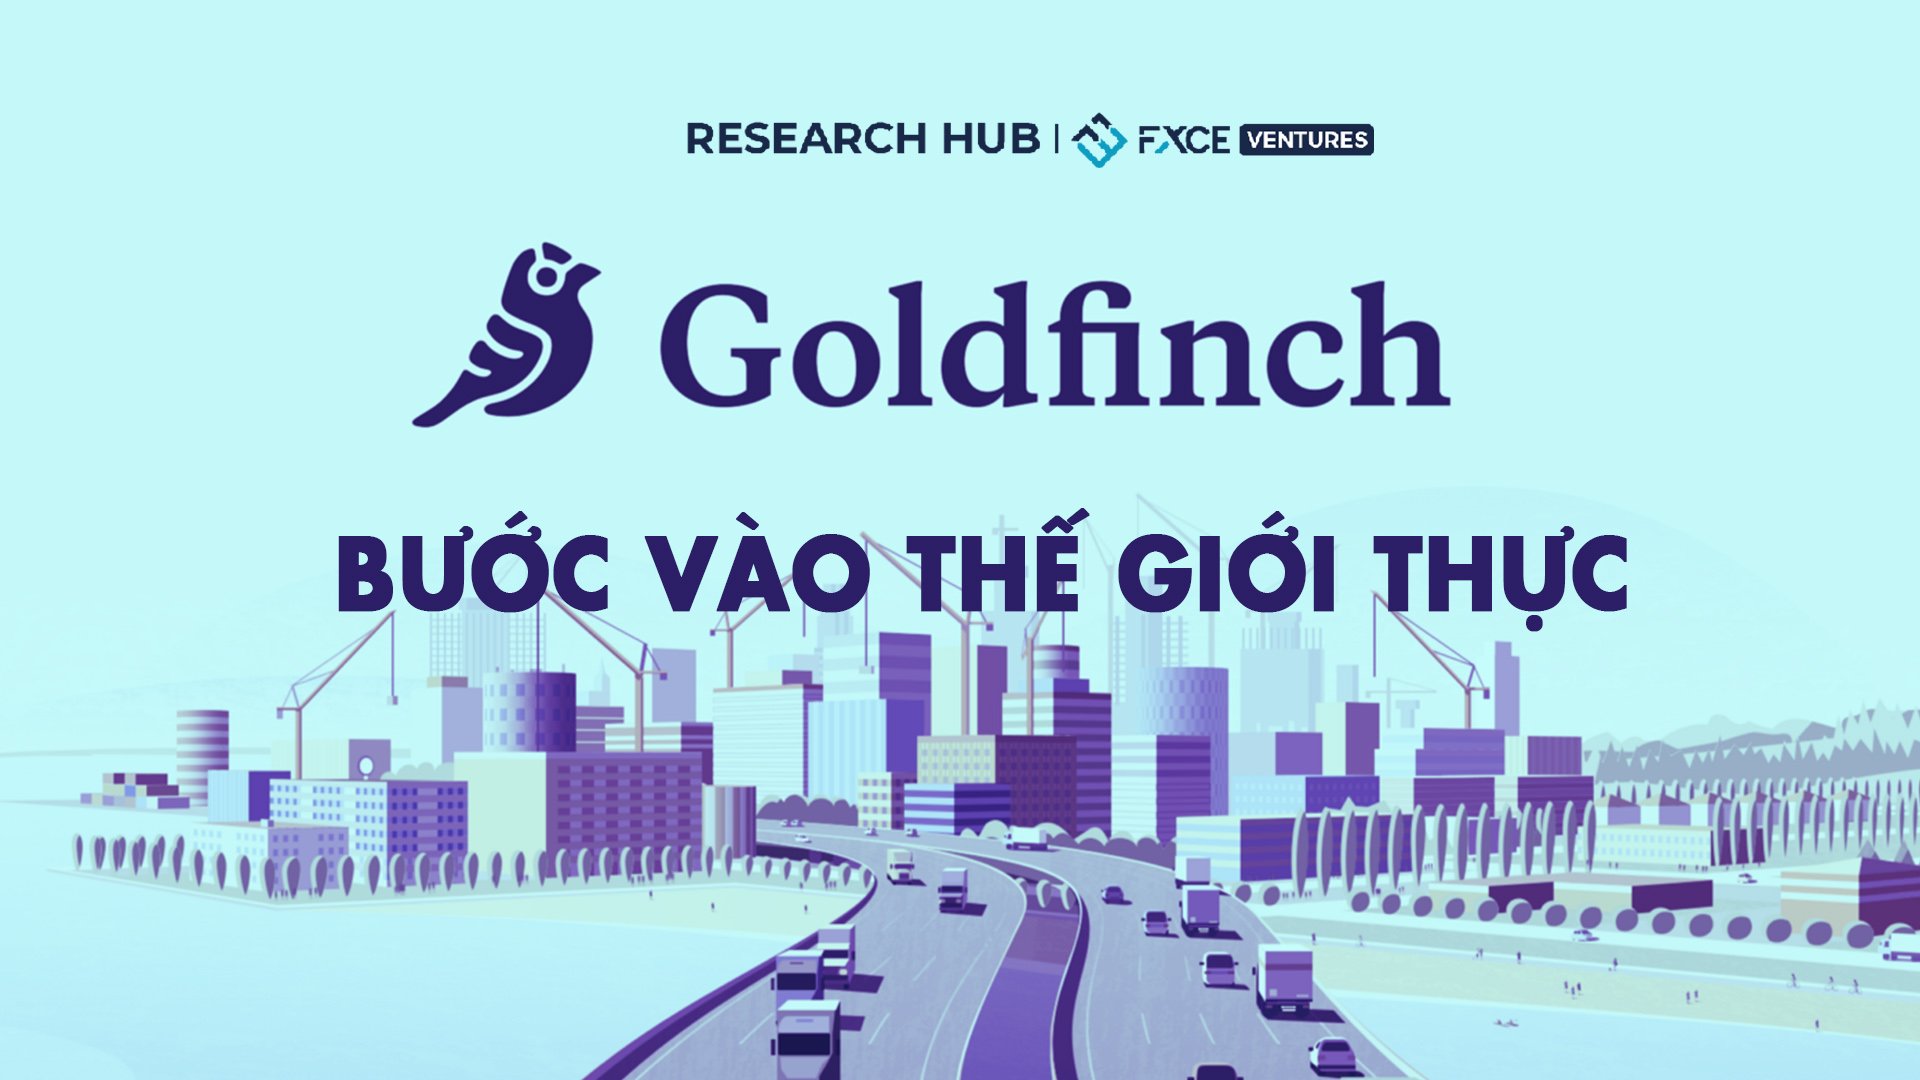 Goldfinch Finance - Bước vào thế giới thực